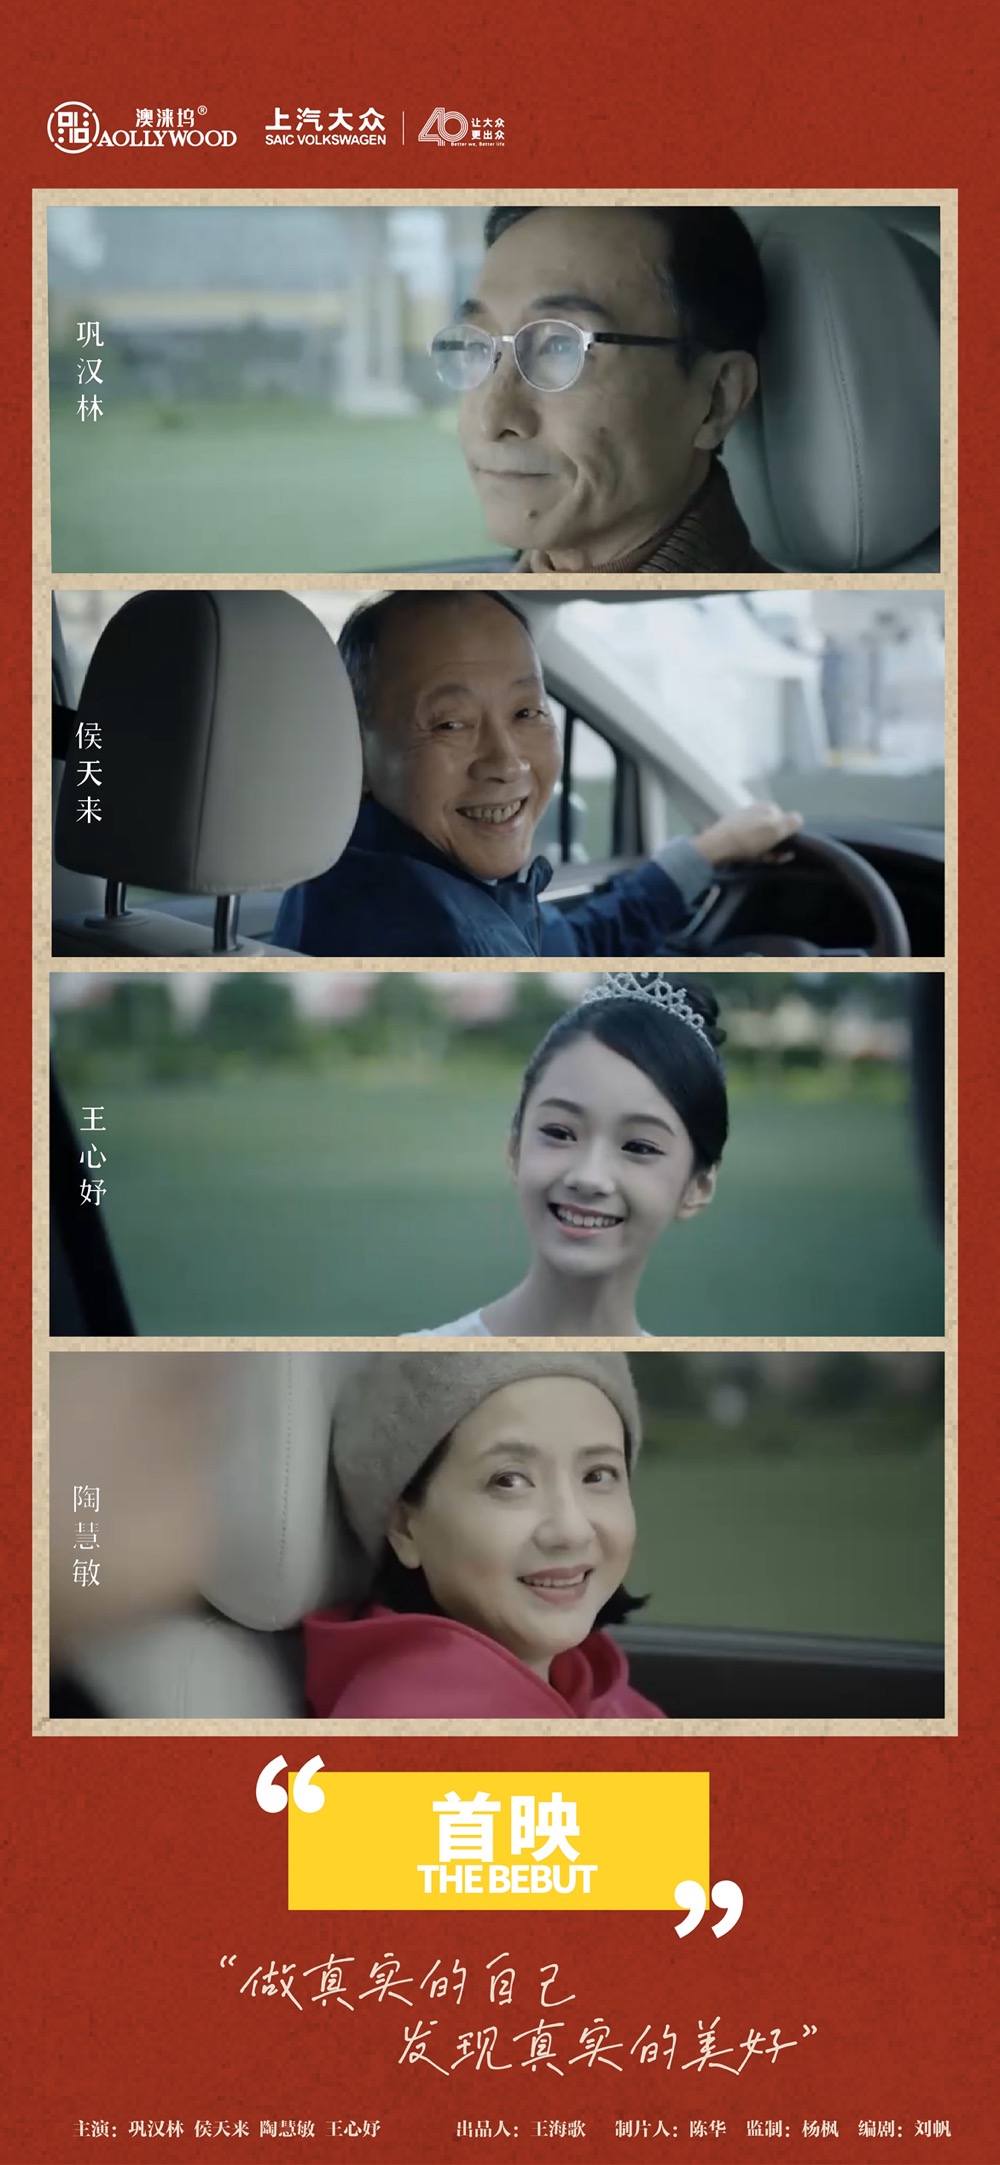 澳涞坞全球青年短片大赛发布公益短片《首映》，华语电影新力量蓄势待发